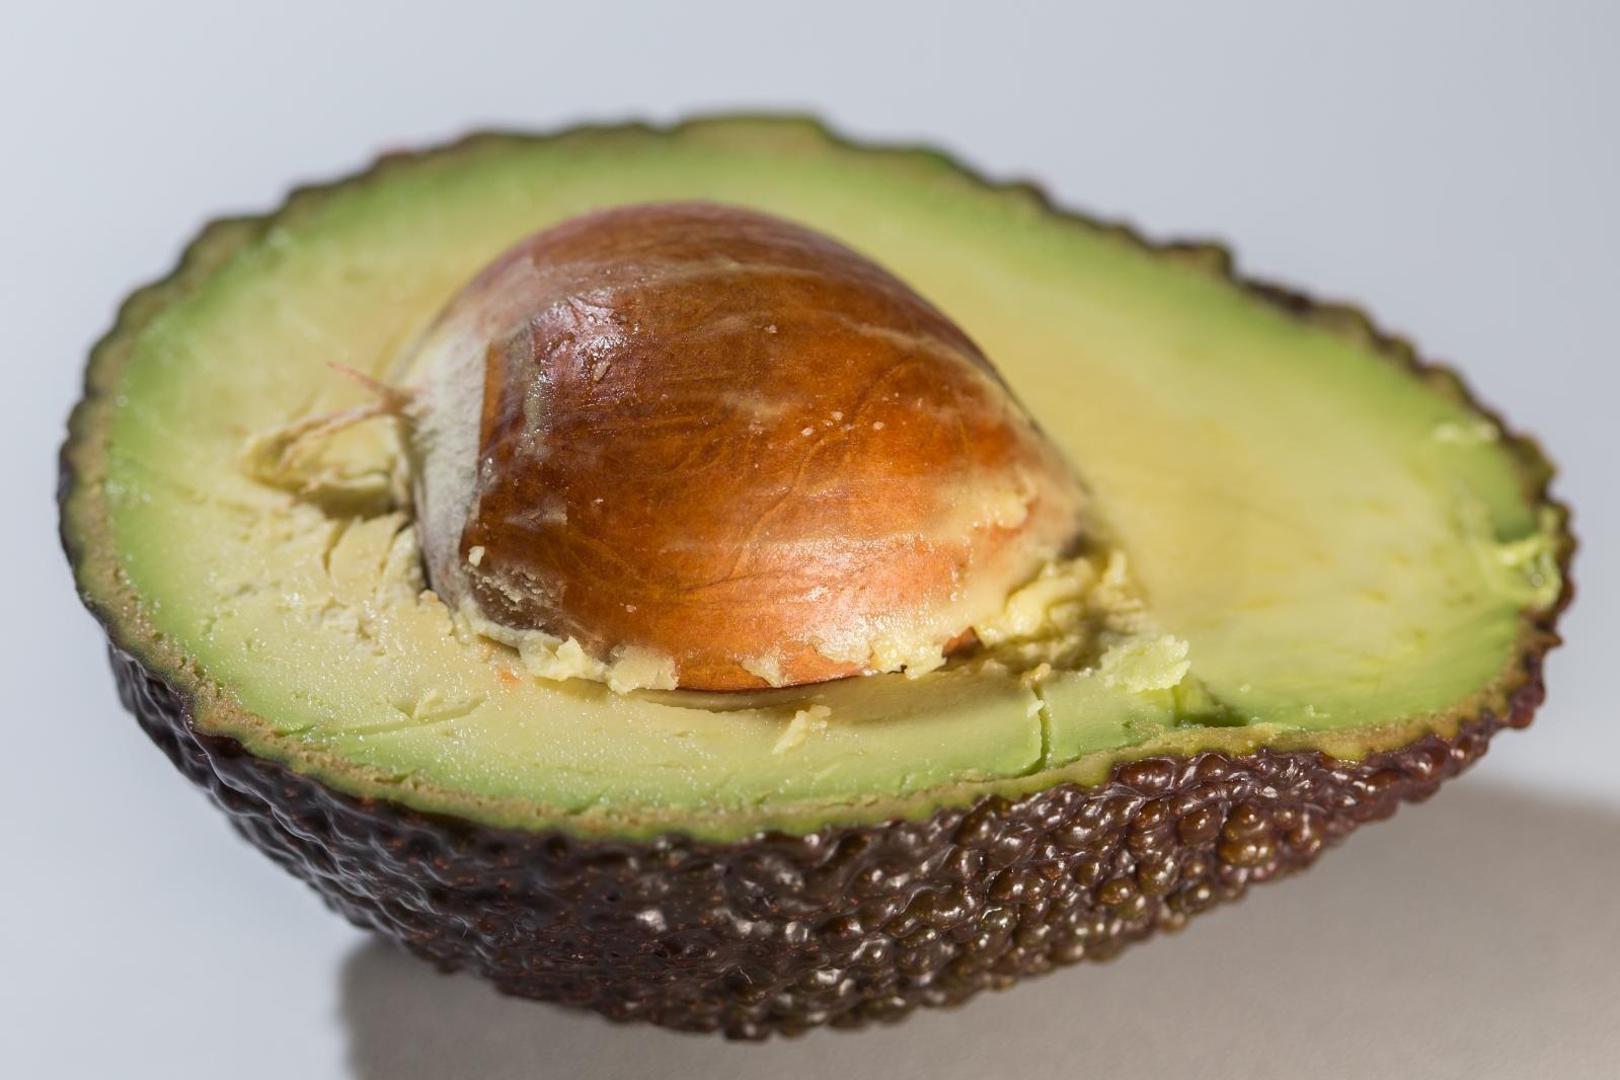 7. AVOKADO - Zbog bogatstva zdravim mastima, avokado snižava kolesterol za oko 22 posto. Jedan avokado sadrži više od pola potrebnog dnevnog unosa vlakana i 40 posto folata koji su vam potrebni svakodnevno.